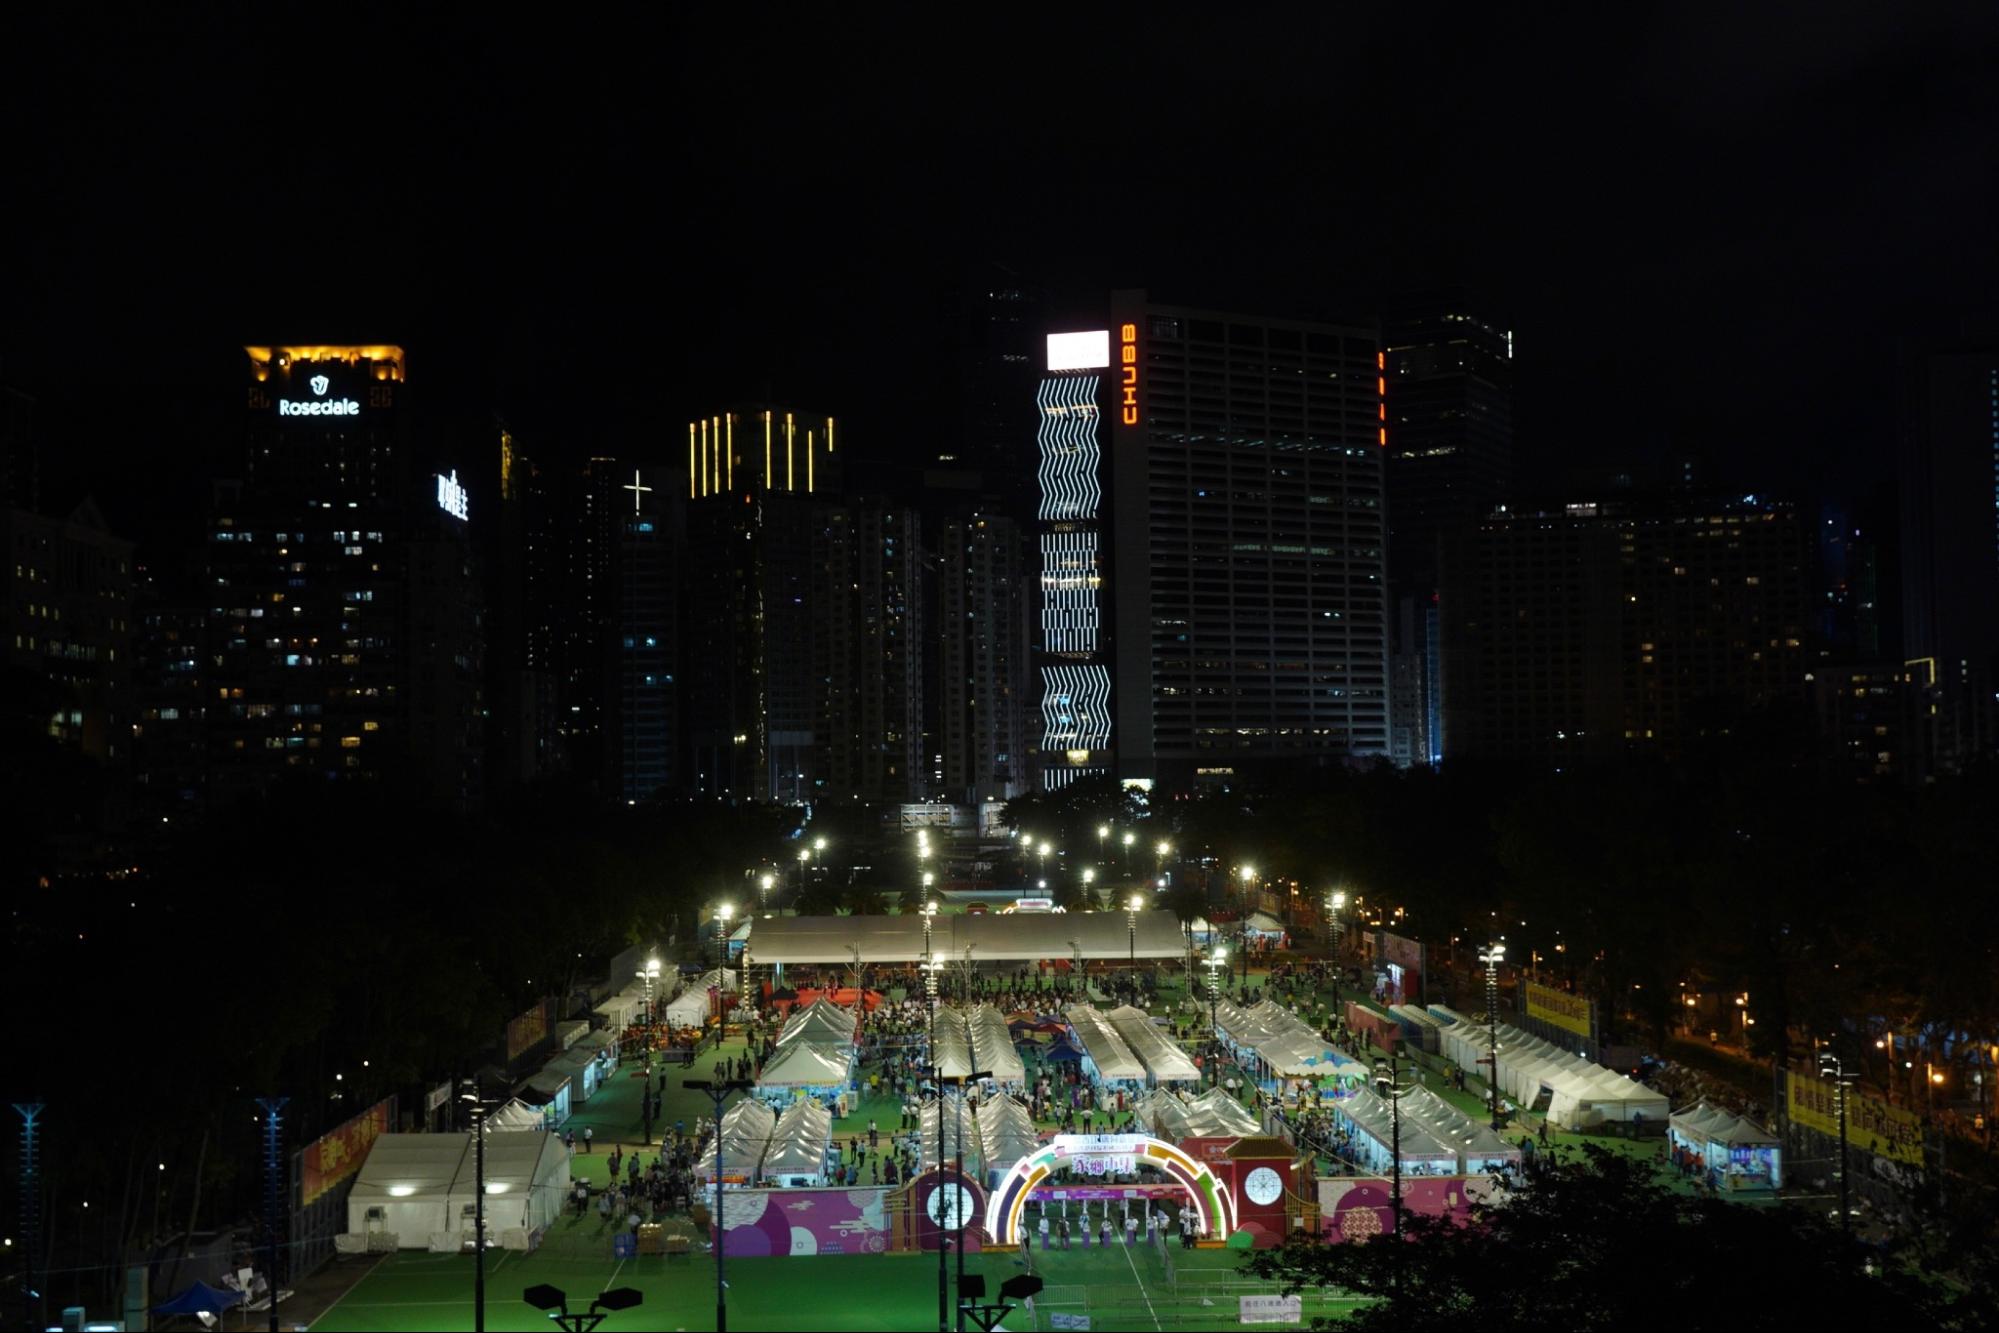 Công viên Victoria ở Hồng Kông, từng là nơi tổ chức lễ thắp nến cầu nguyện vào ngày 04/06 thường niên, đã được các tổ chức ủng hộ chính quyền thuê để tổ chức một sự kiện chợ trời. Các dải băng đã bao vây các khu vực không có người, hôm 04/06/2023. (Ảnh: Benson Lau/The Epoch Times)